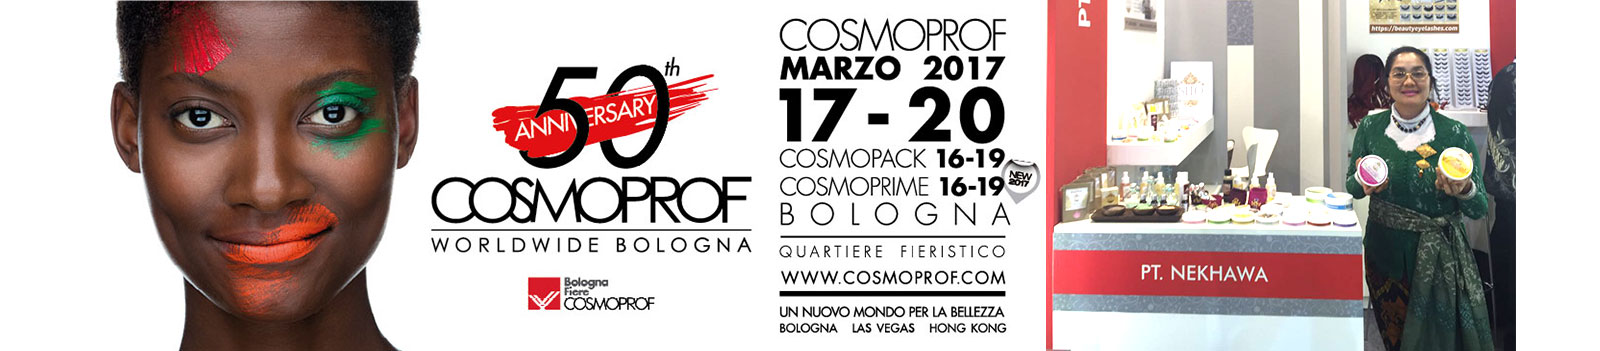 A Cosmoprof Worldwide Bologna La Bellezza Multietnica Di Tones Of Beauty It 3